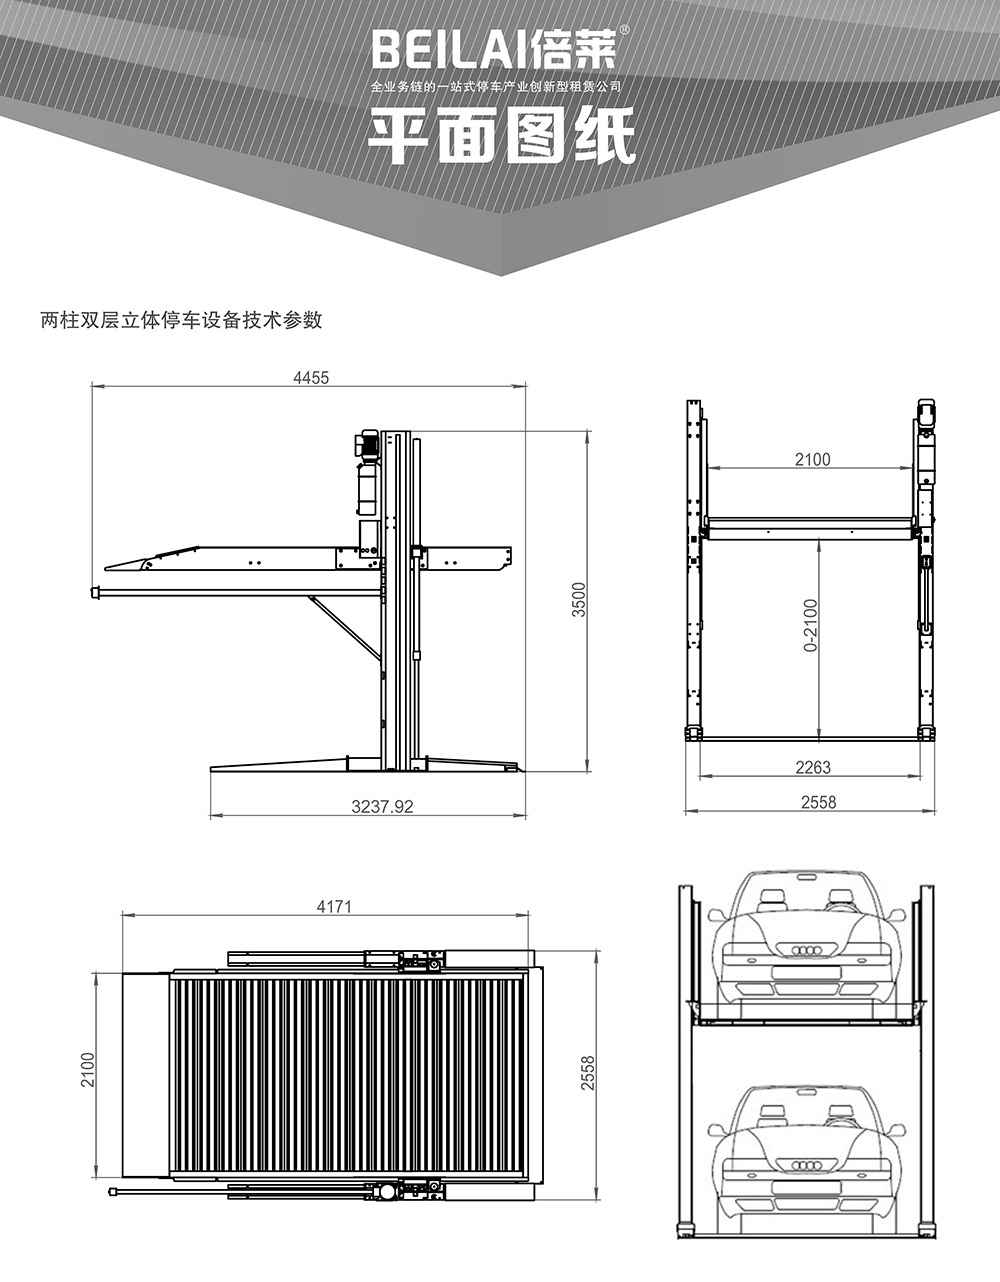 贵州倍莱两柱简易升降立体车库平面图纸.jpg